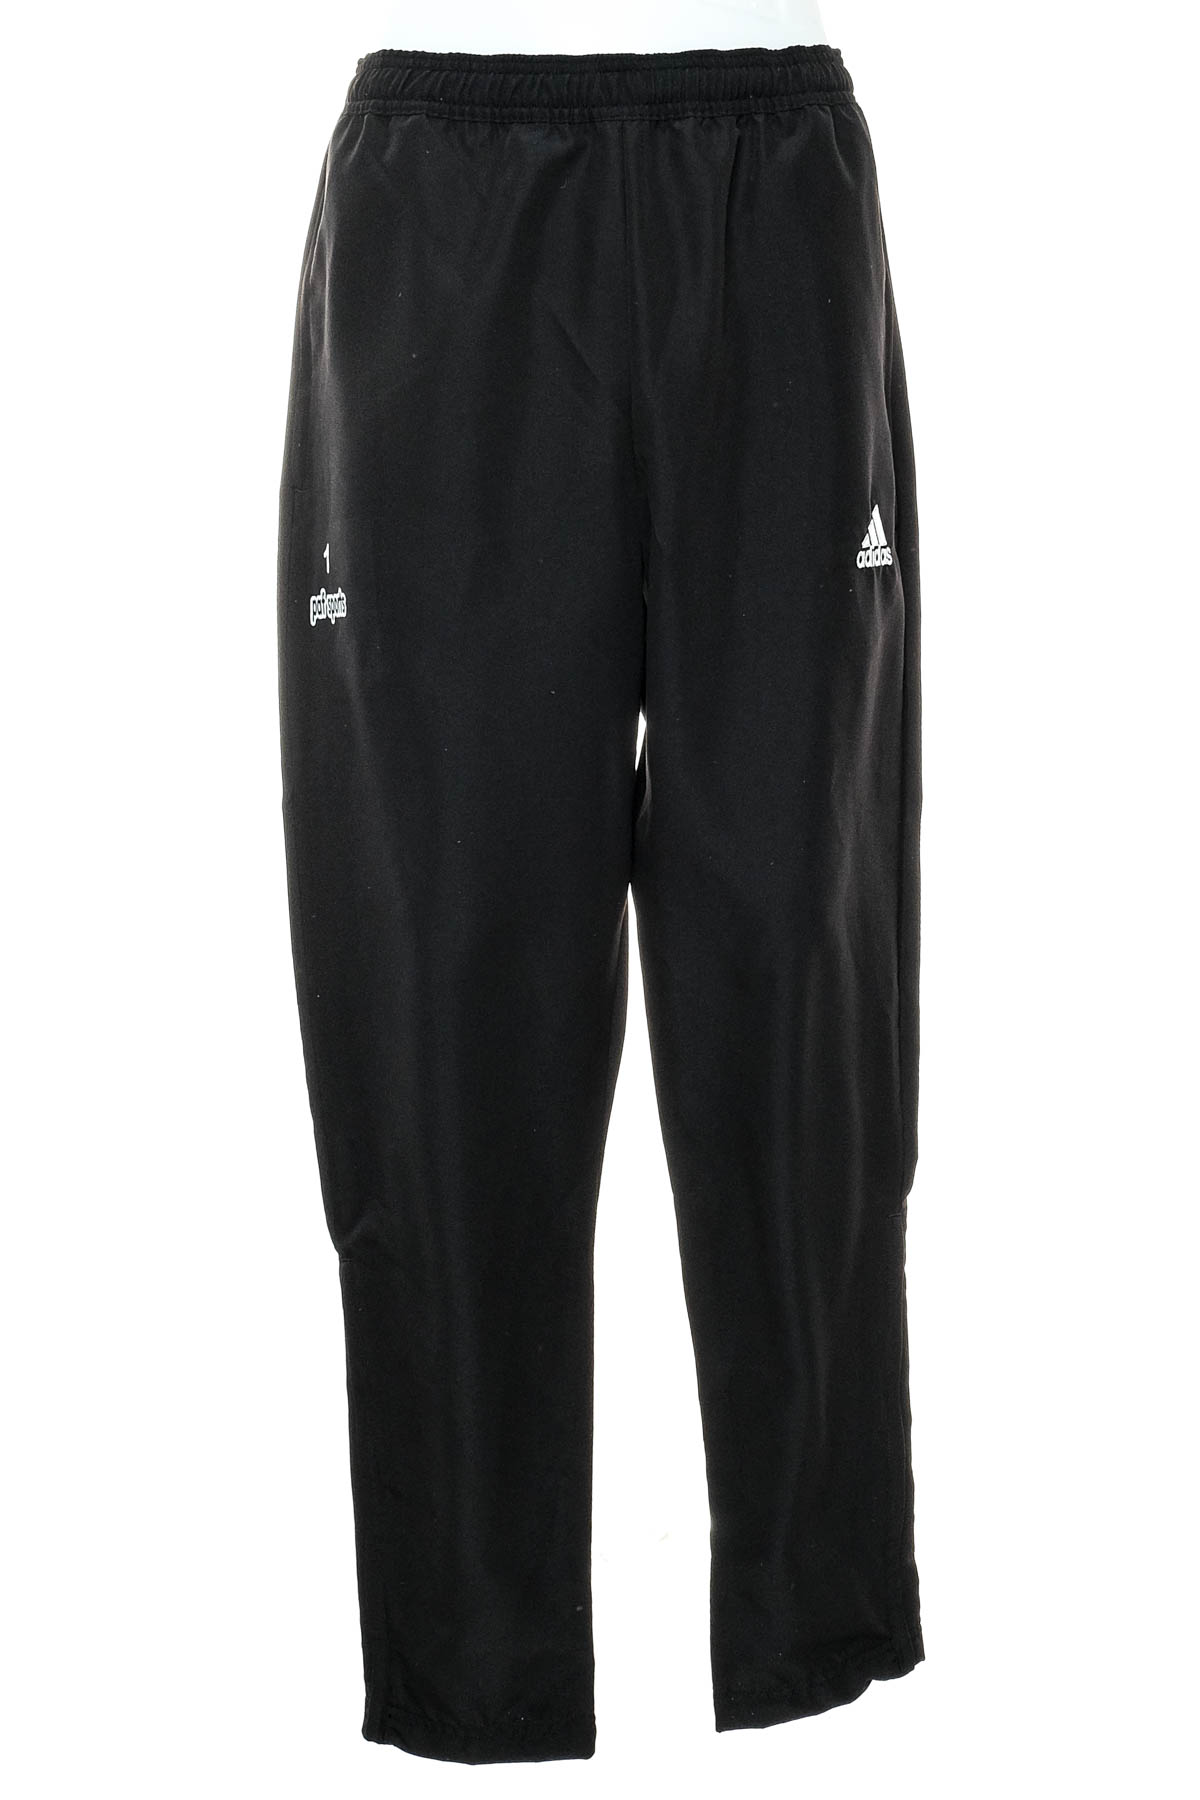 Αθλητικά παντελόνια ανδρών - Adidas - 0